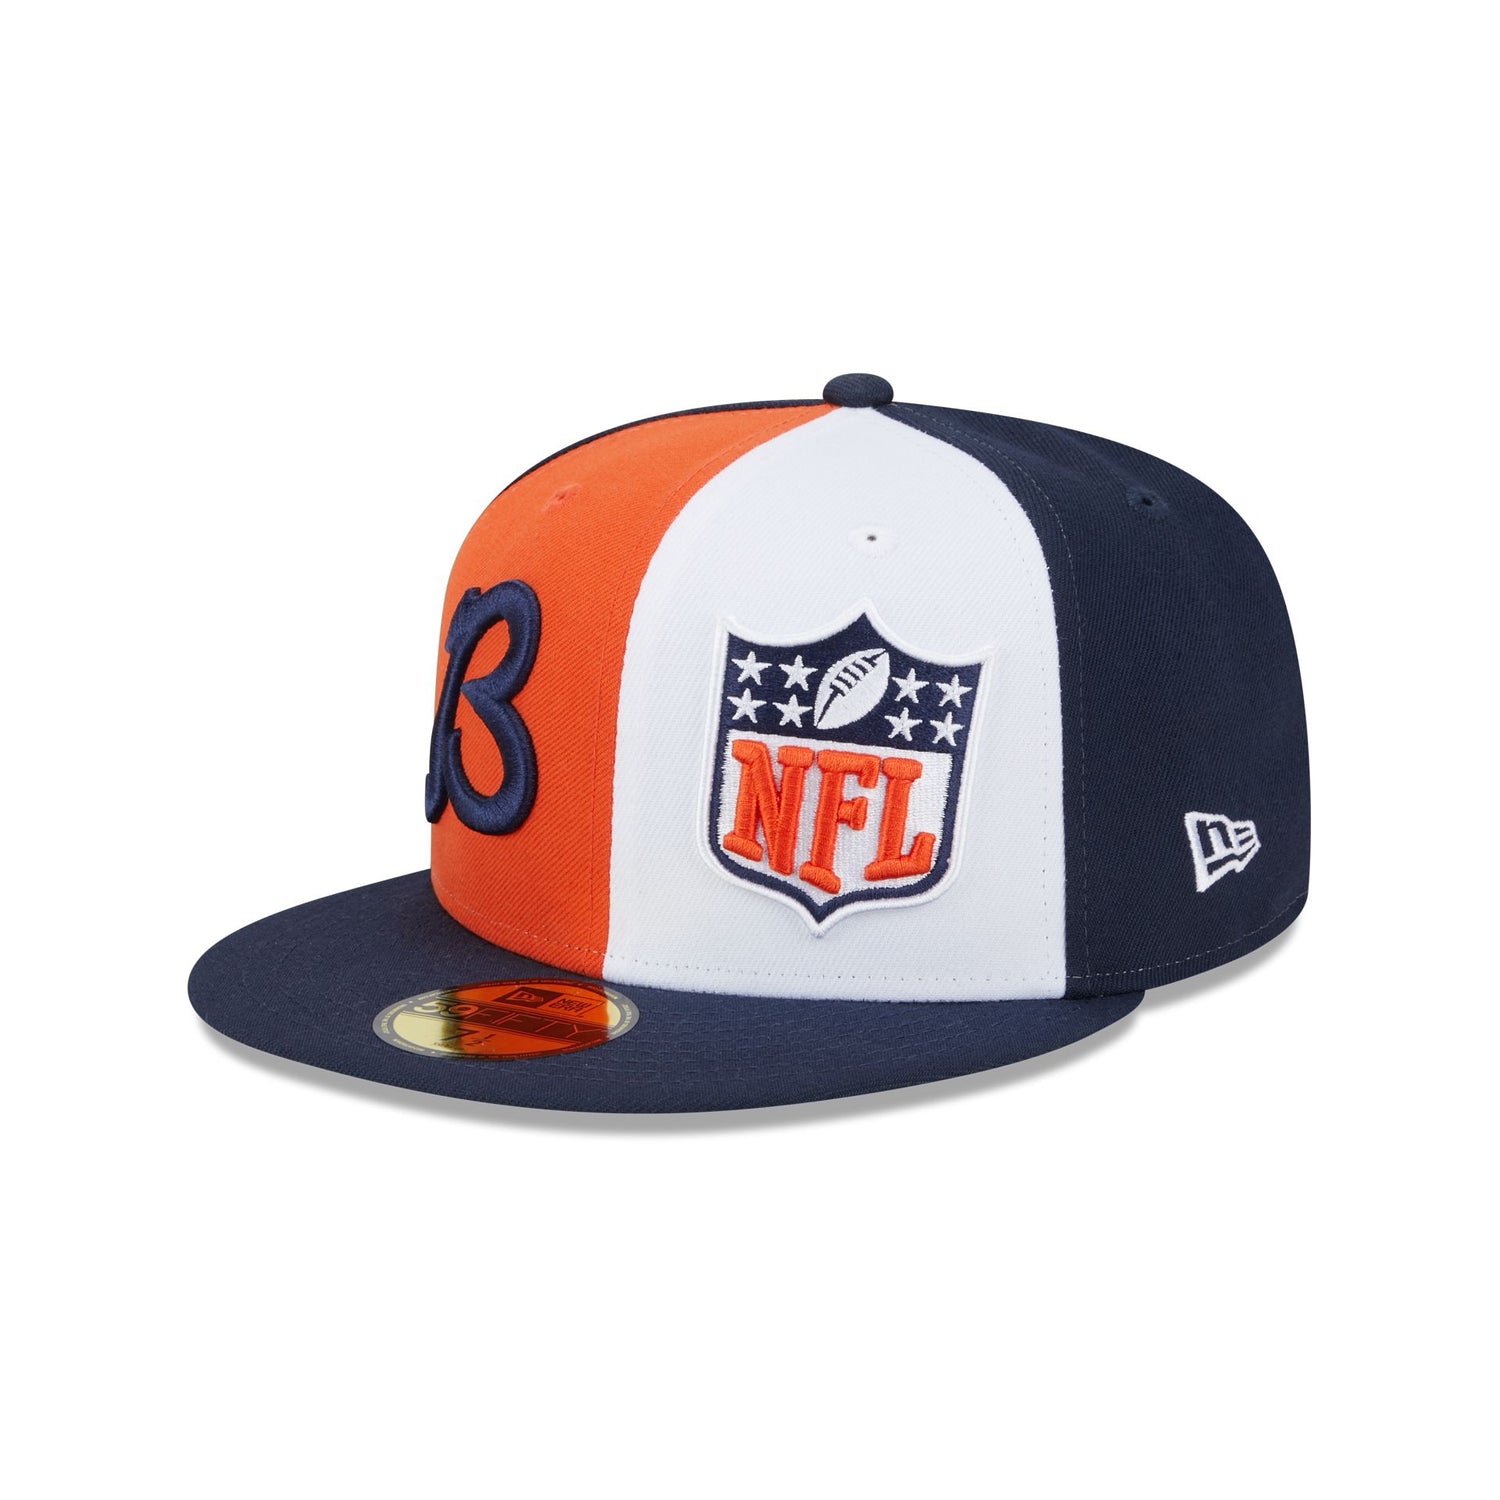 NFL Hats & Caps – New Era Cap